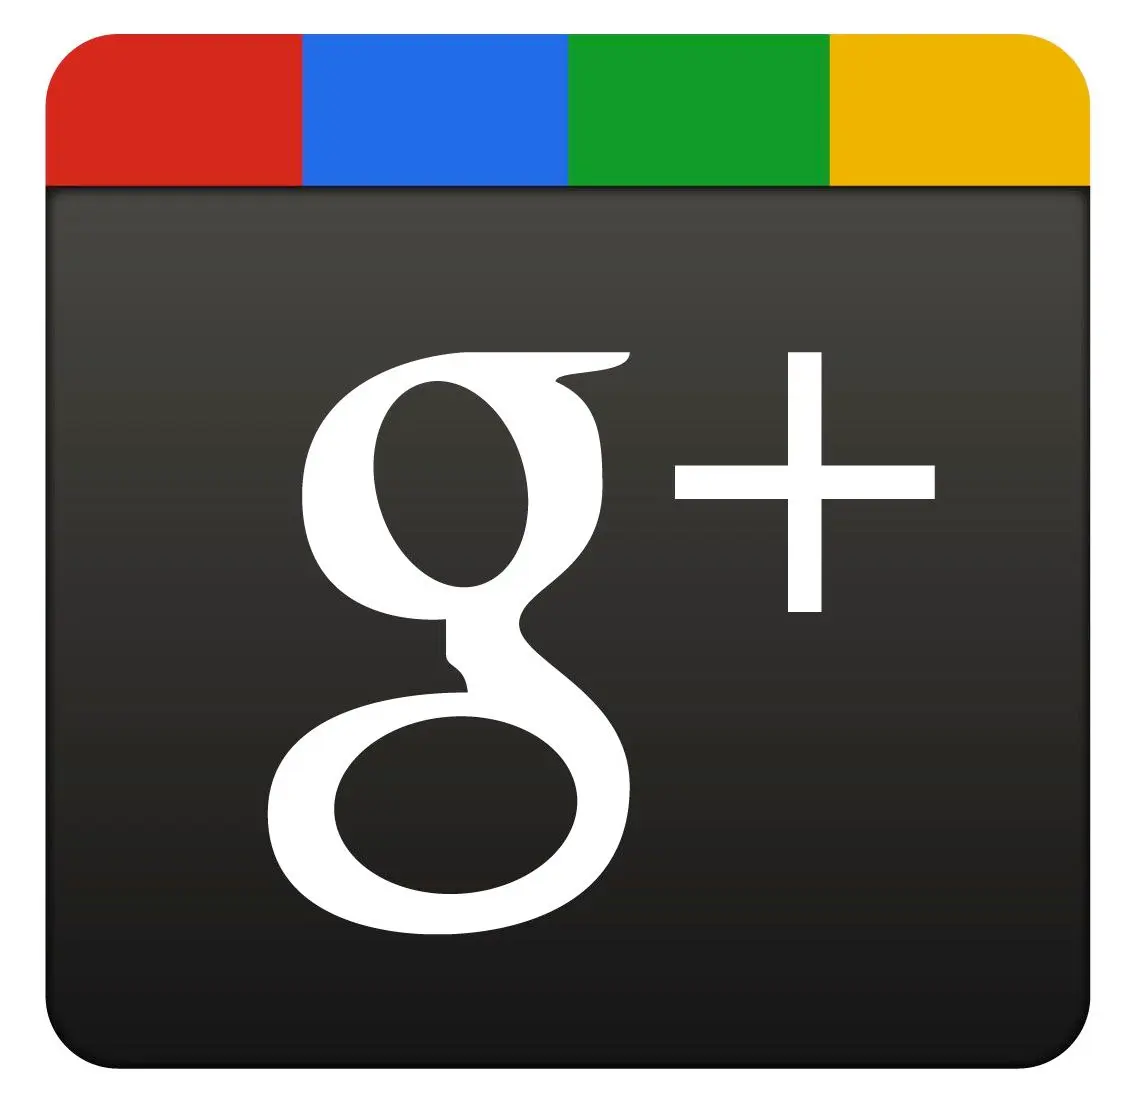 Google+ derrière Facebook, mais devant Twitter